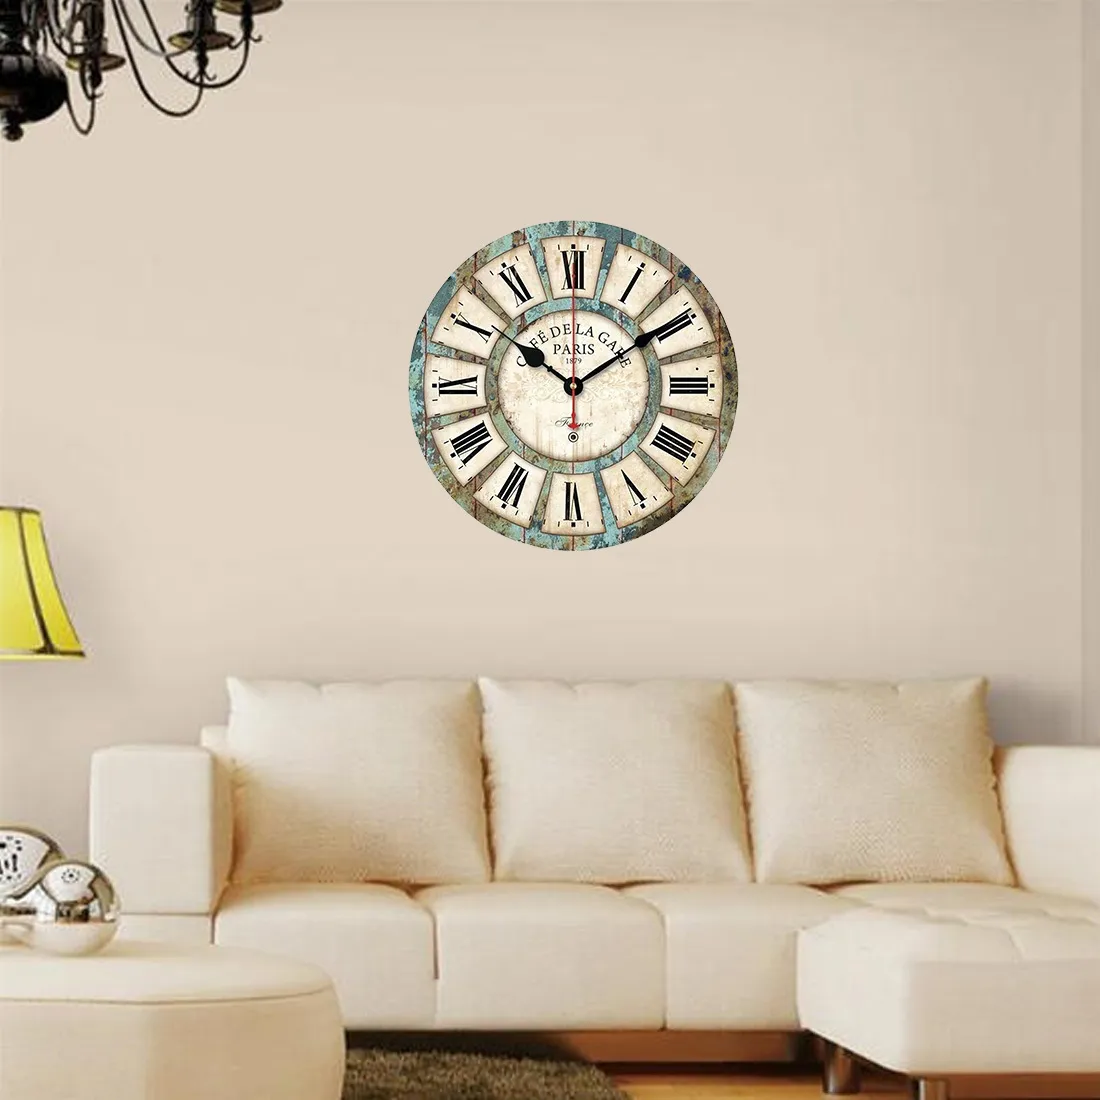 Creative rond bois horloge murale quartz support horloge décoration de la maison salon décor style européen vintage LJ201204